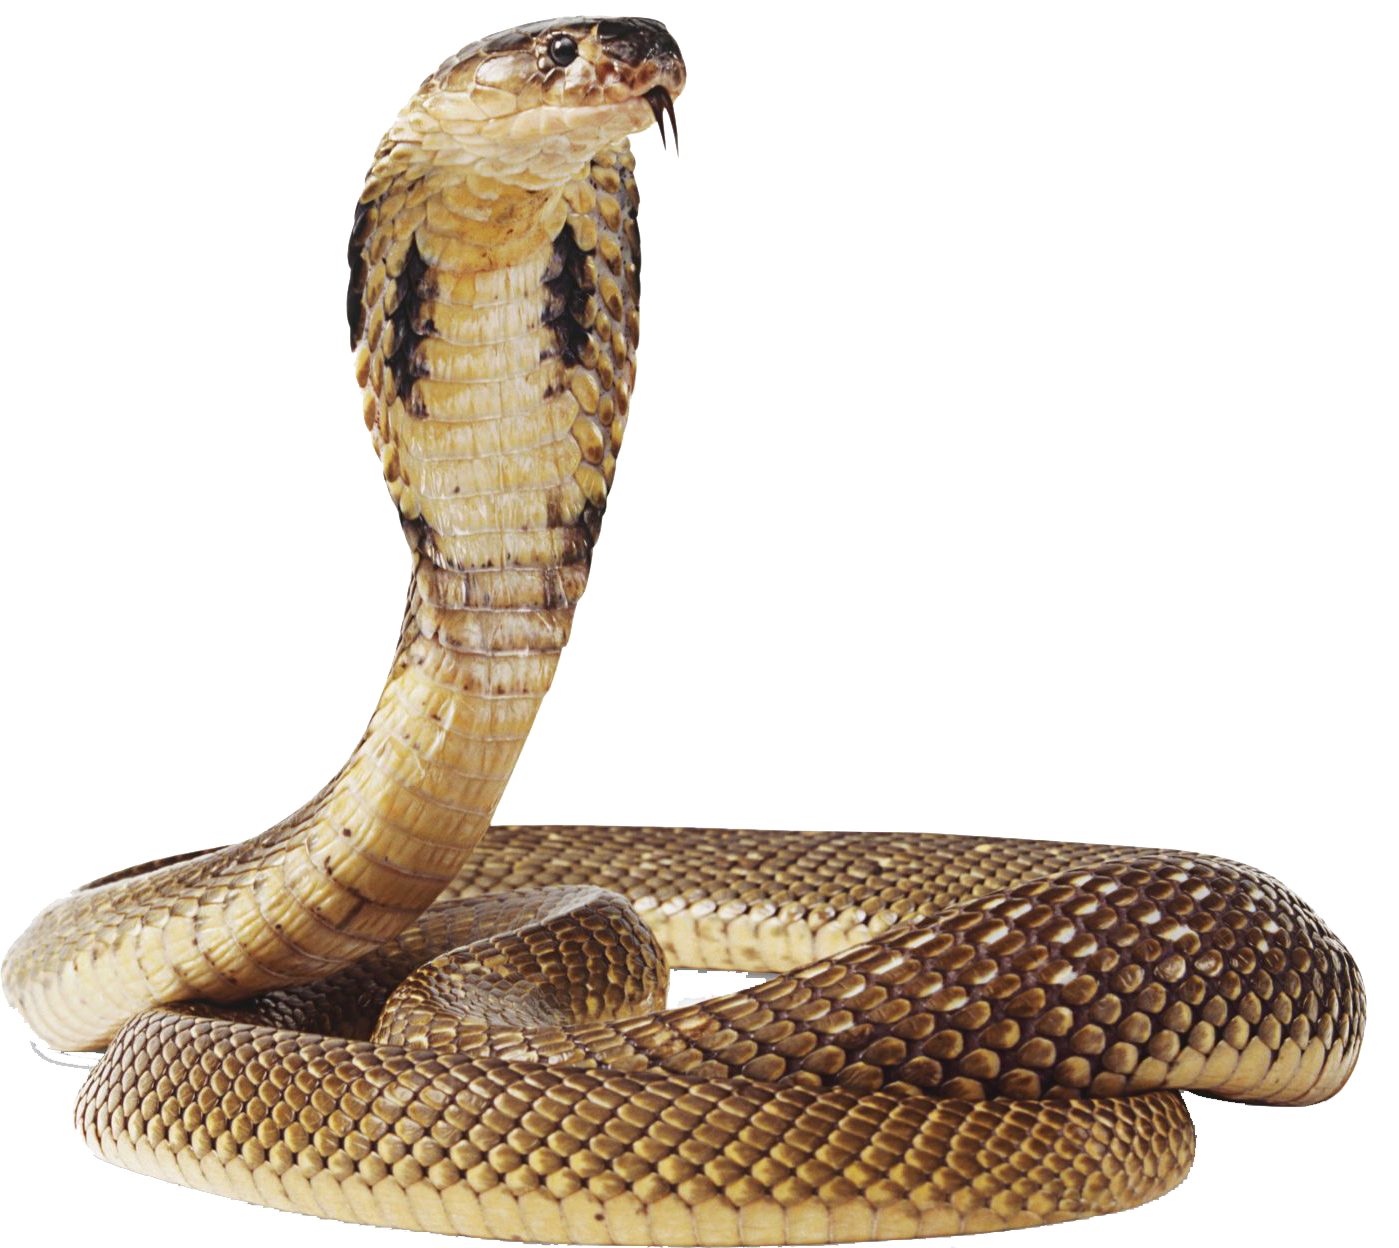 Download Cobra Snake Transparent Image Hq Png Image Freepngimg